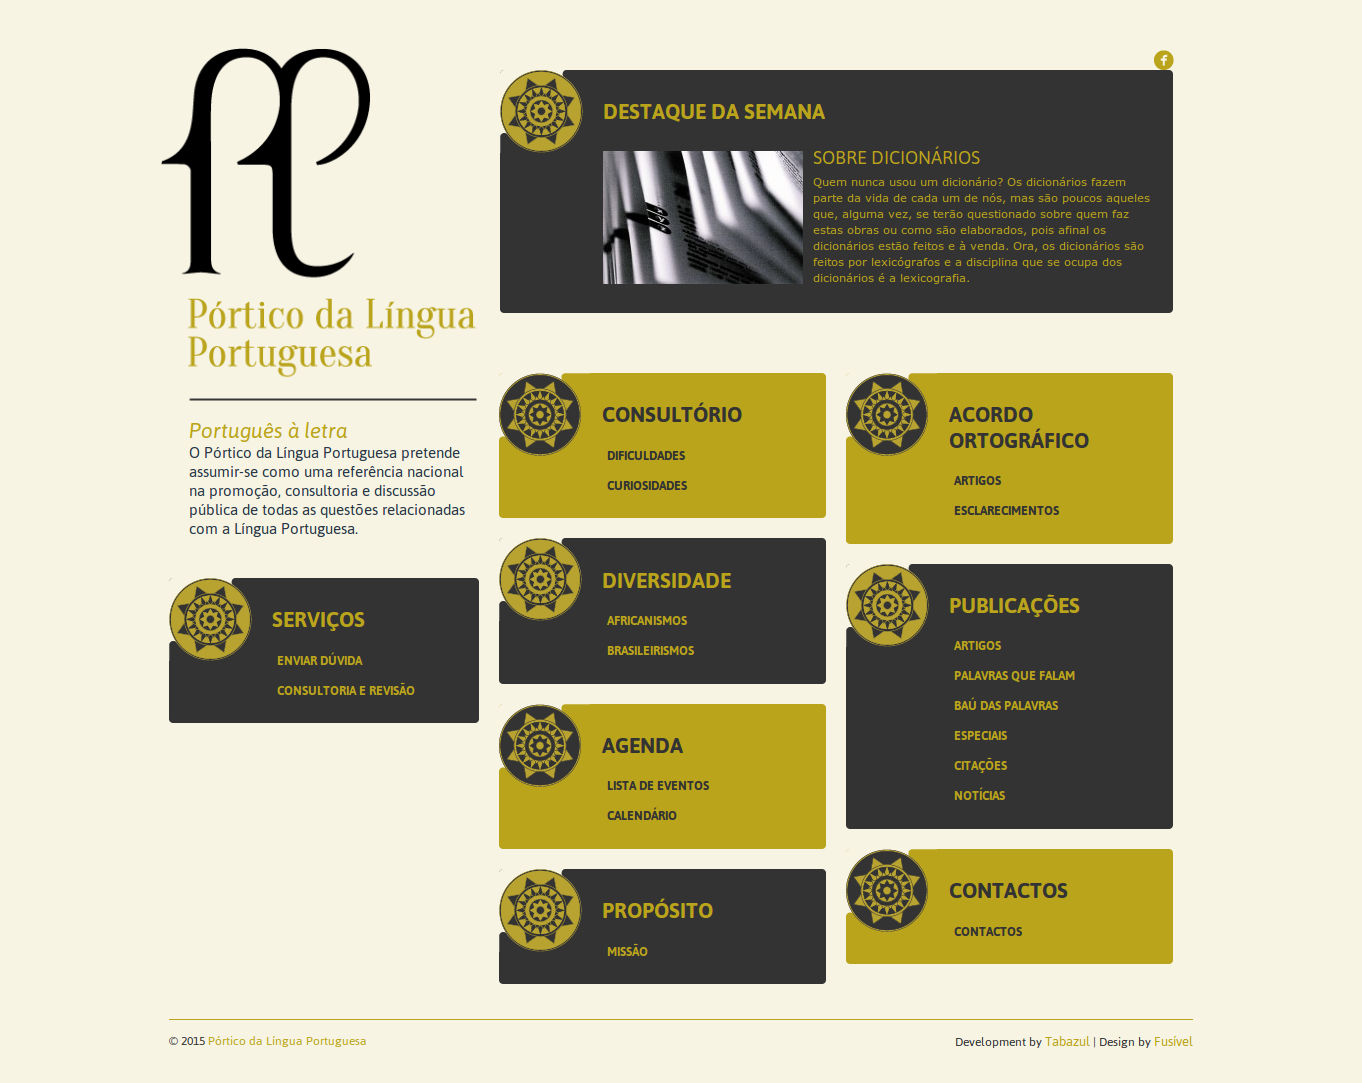 Pórtico da Língua Portuguesa